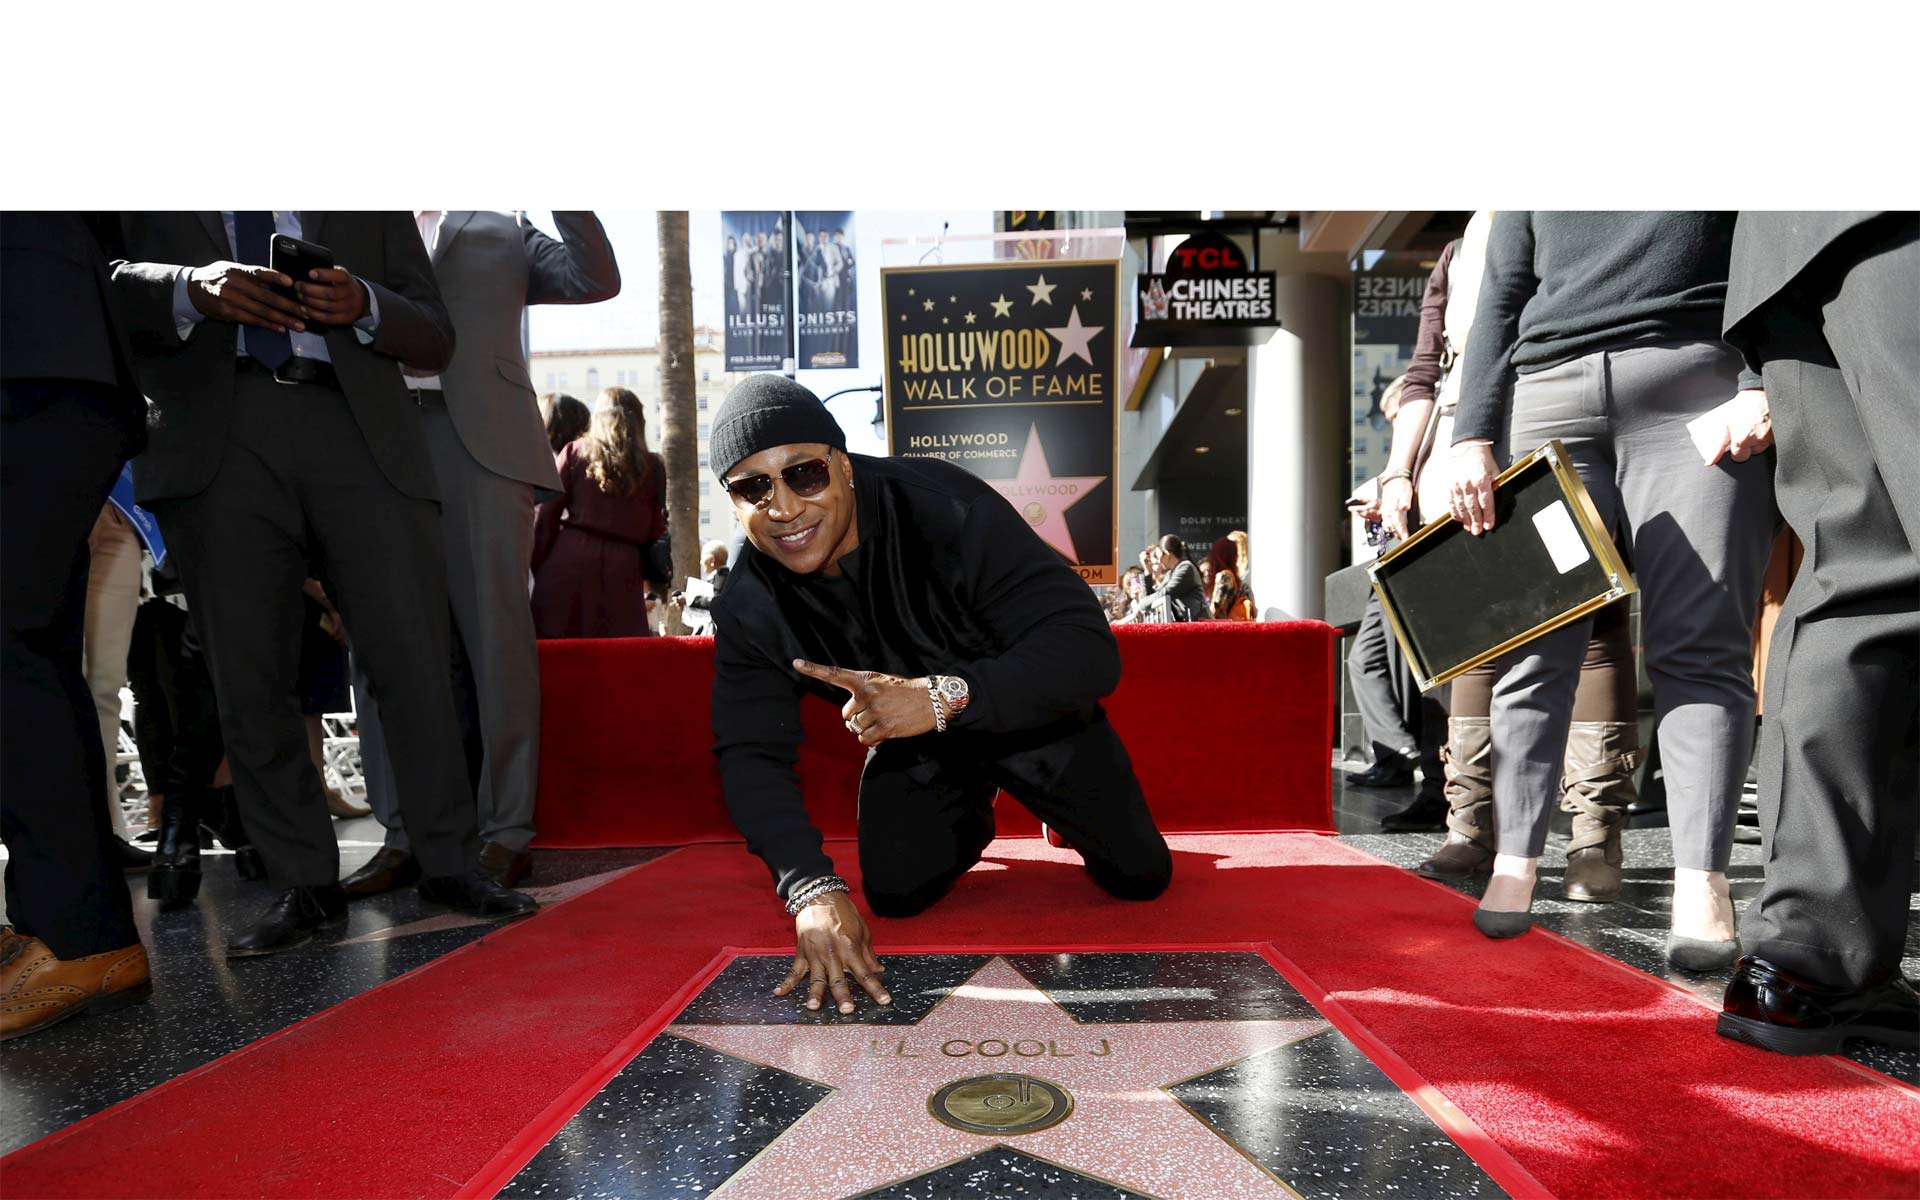 El pasillo de las estrellas de Hollywood se llenó de gente este jueves para que la actriz Queen Latifah le entregara su reconocimiento al rapero